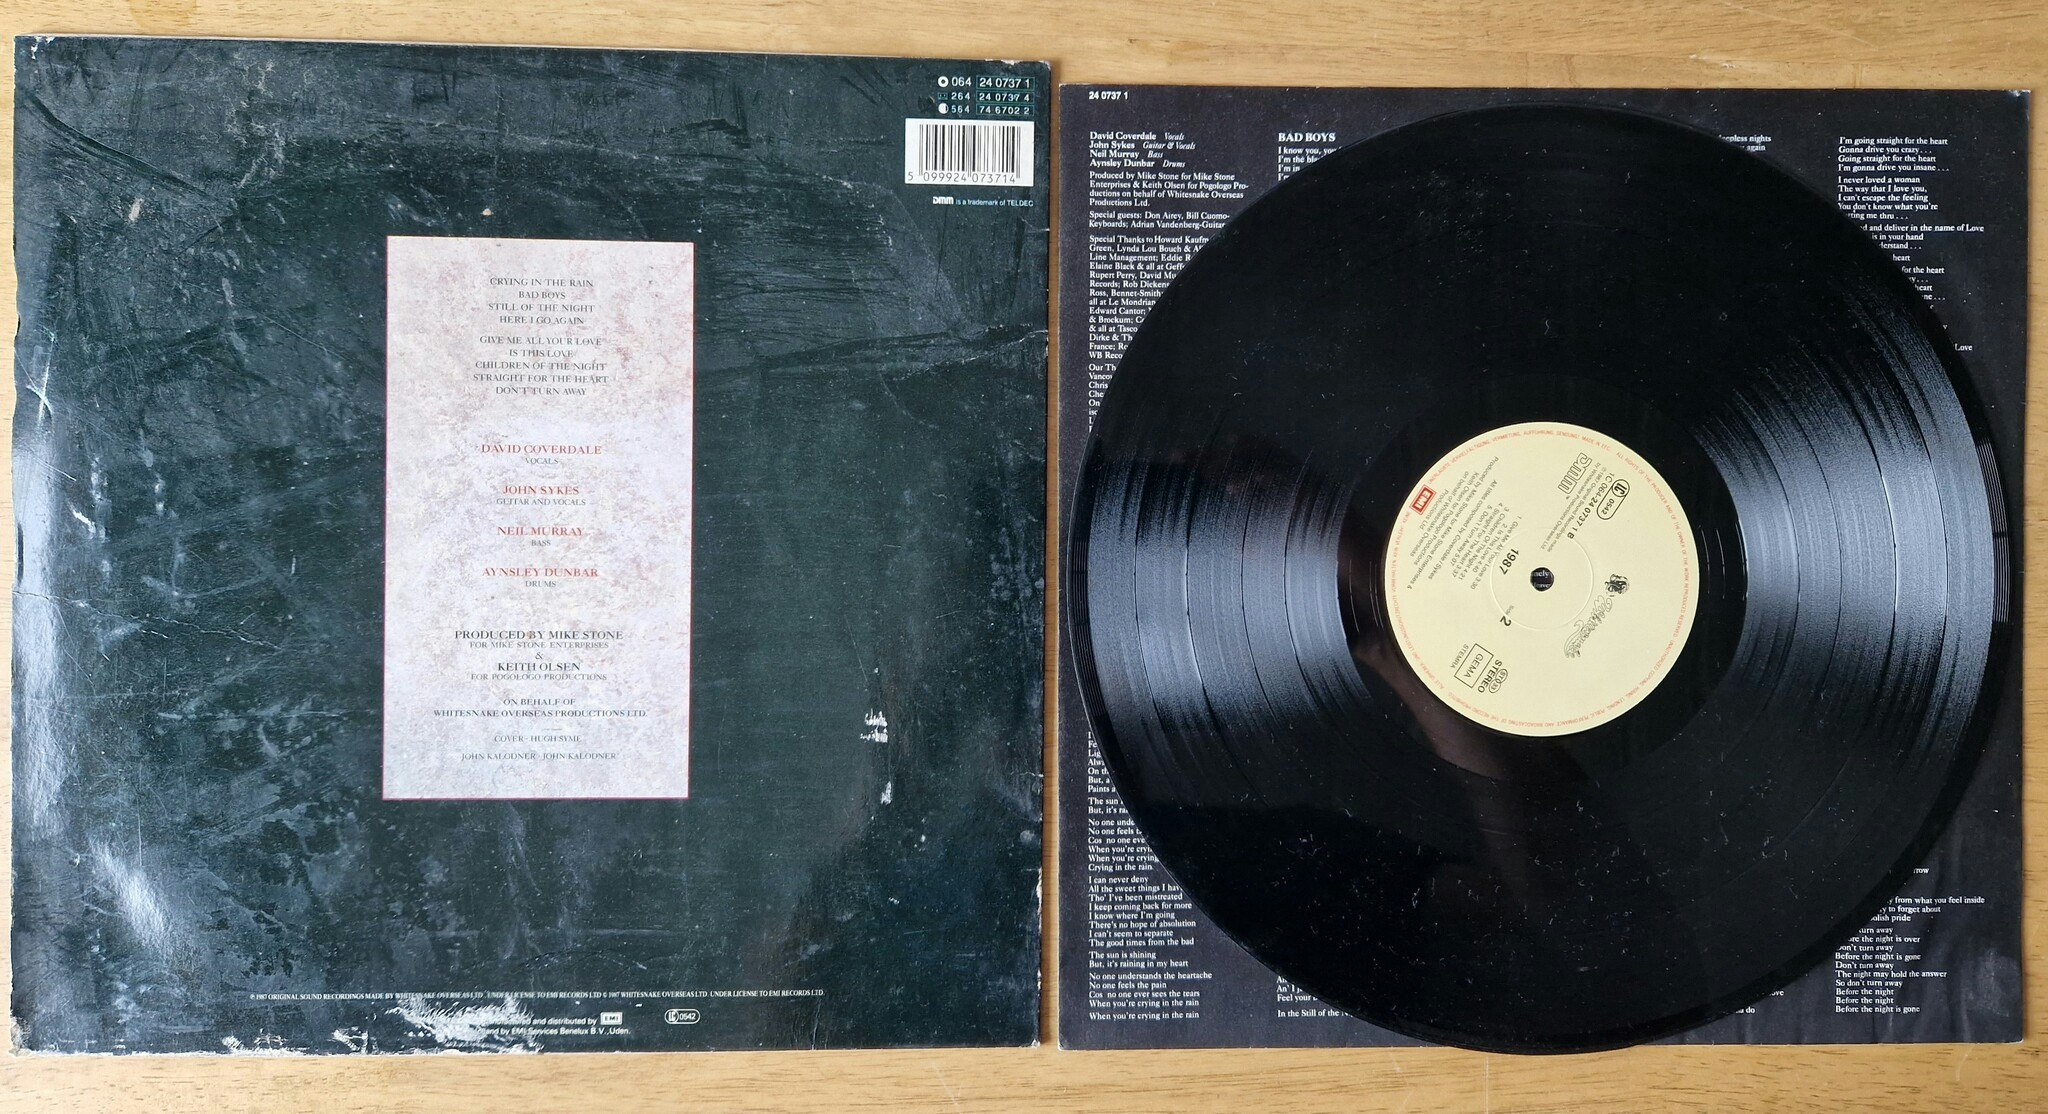 Whitesnake, 1987. Vinyl LP